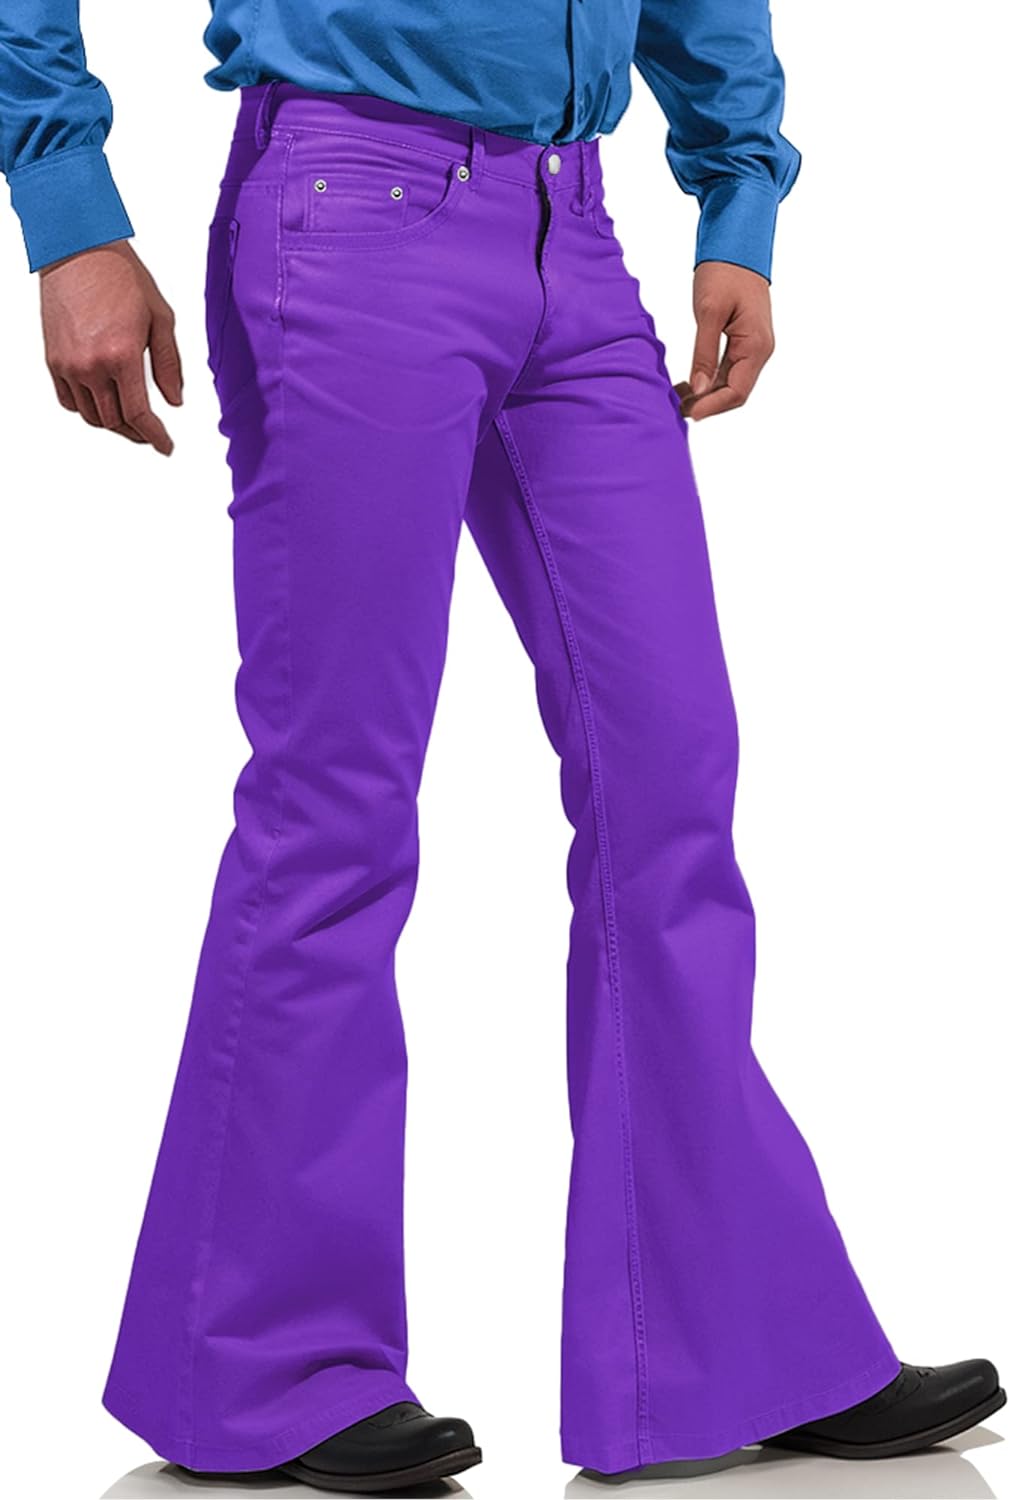  70s Disco Pants For Men,Mens Bell Bottom Jeans Pants,60s 70s  Bell Bottoms Vintage Denim Pants Jeans For Men Wine Red